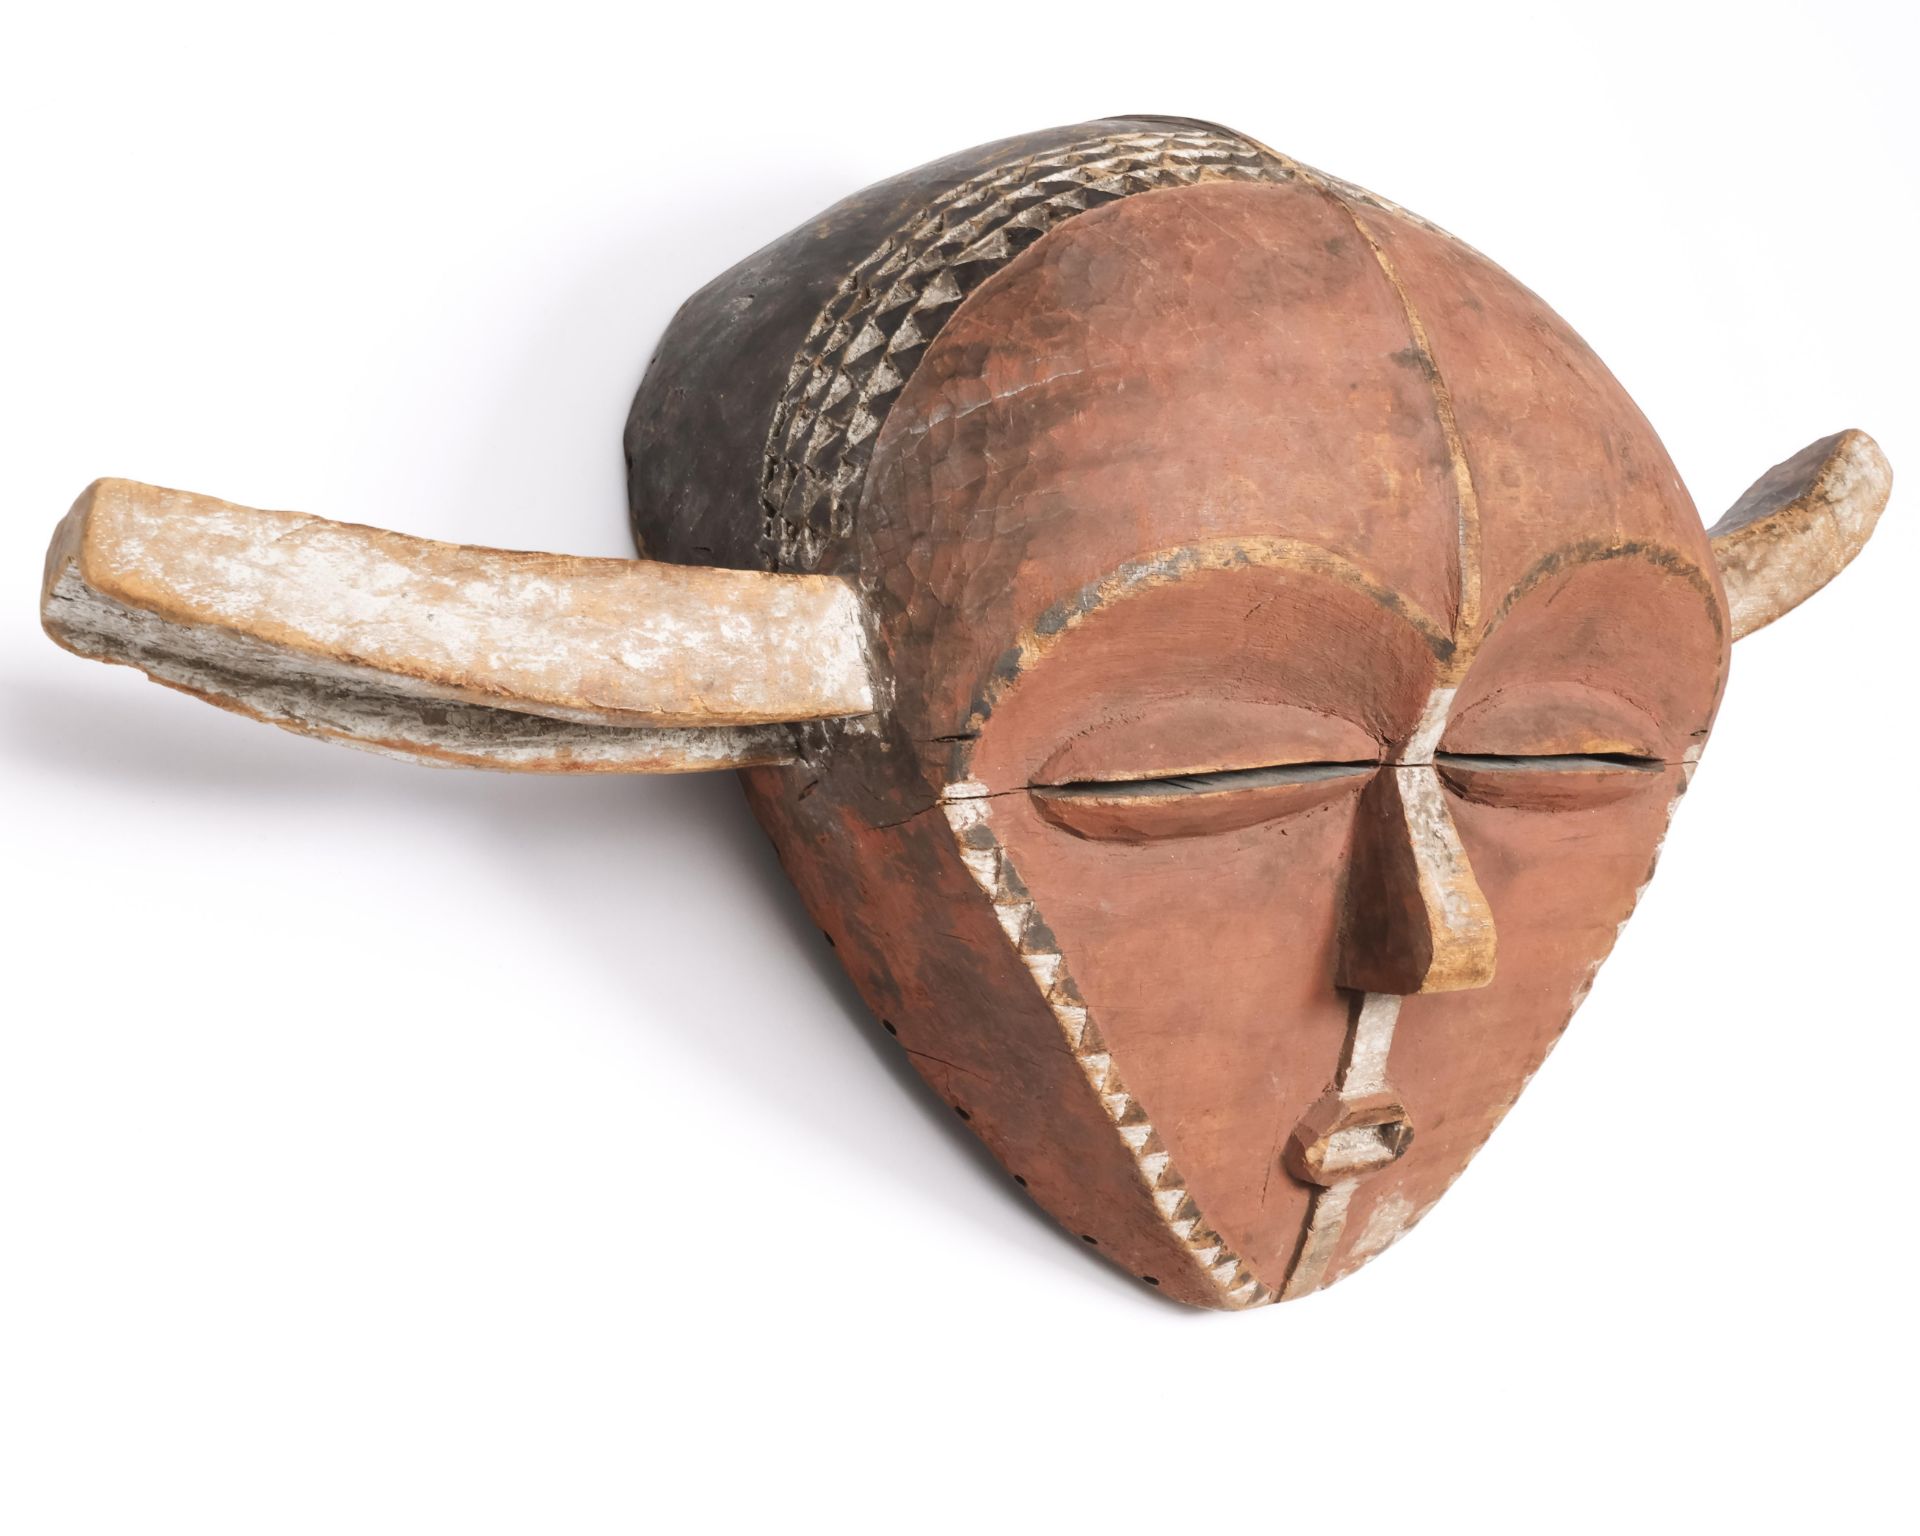 D.R. Congo, Eastern Pende, panya ngombe mask,